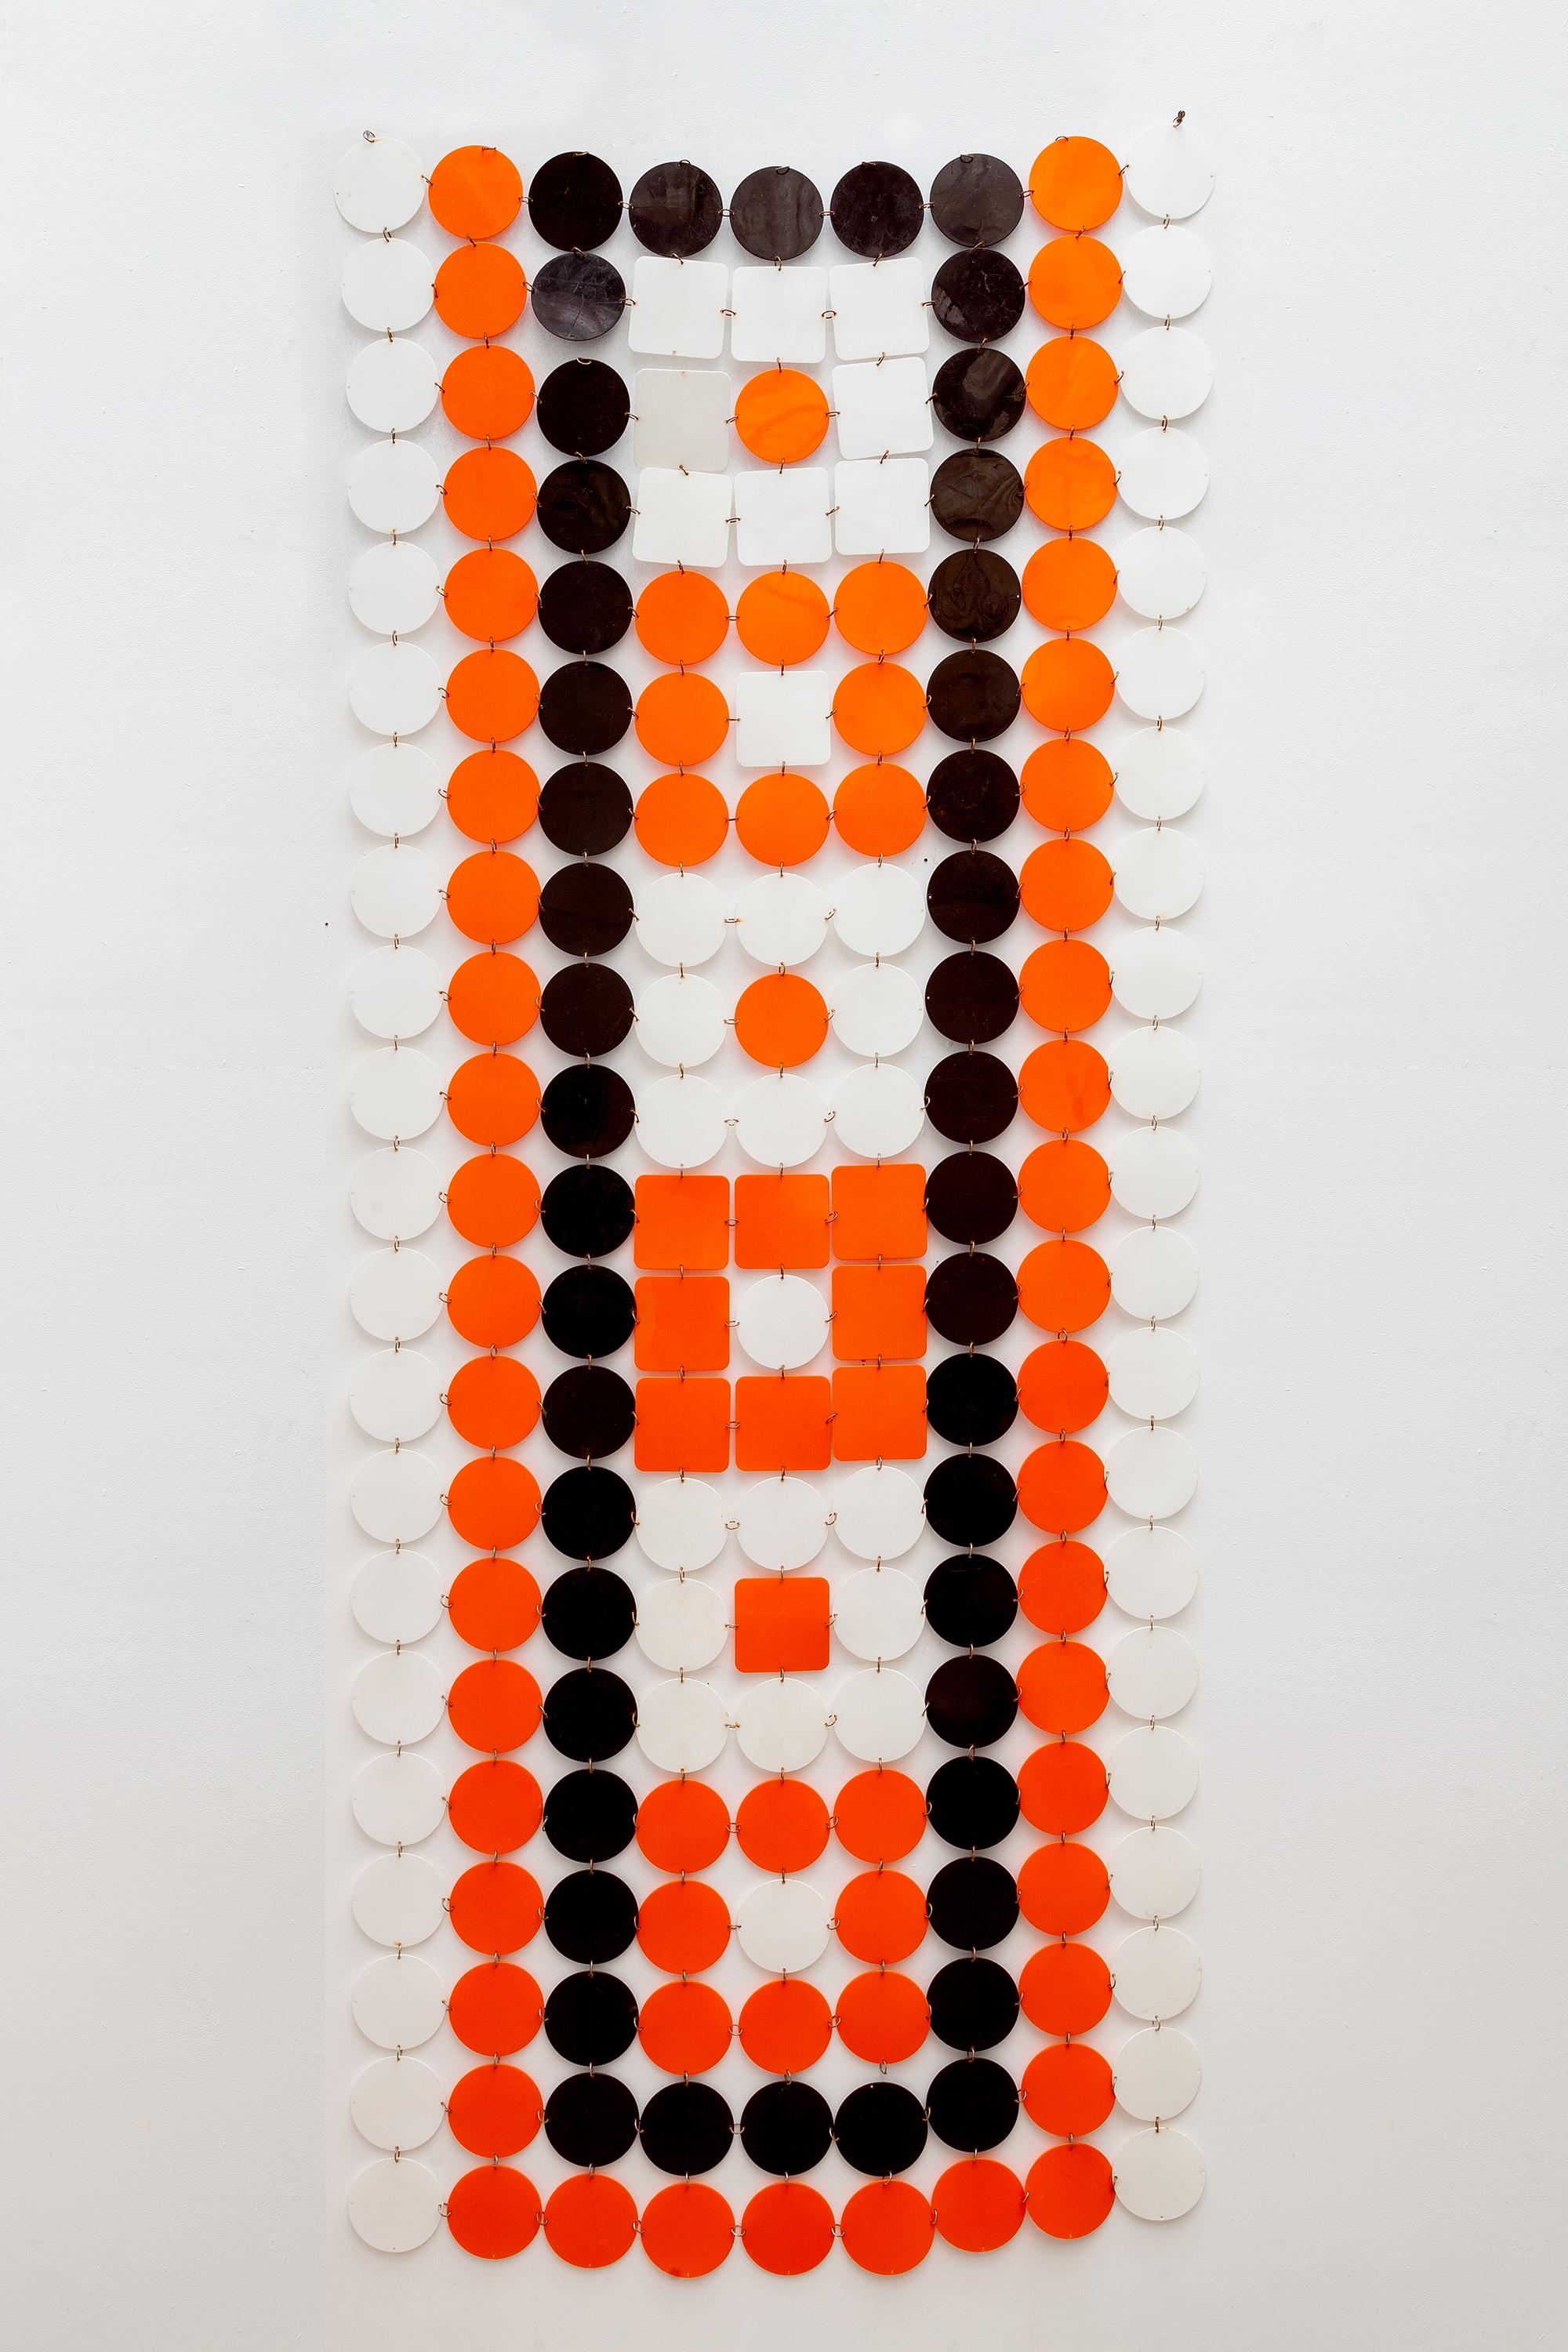 Pop-Art 1960er Jahre hängende Leinwand oder Raumteiler. Kunststoffscheiben im Mod-Stil, verbunden durch verchromte Metallreifen in leuchtenden Orange-, Braun- und Weißtönen.
Es kann auf verschiedene Weise verwendet werden, zum Beispiel als Vorhang